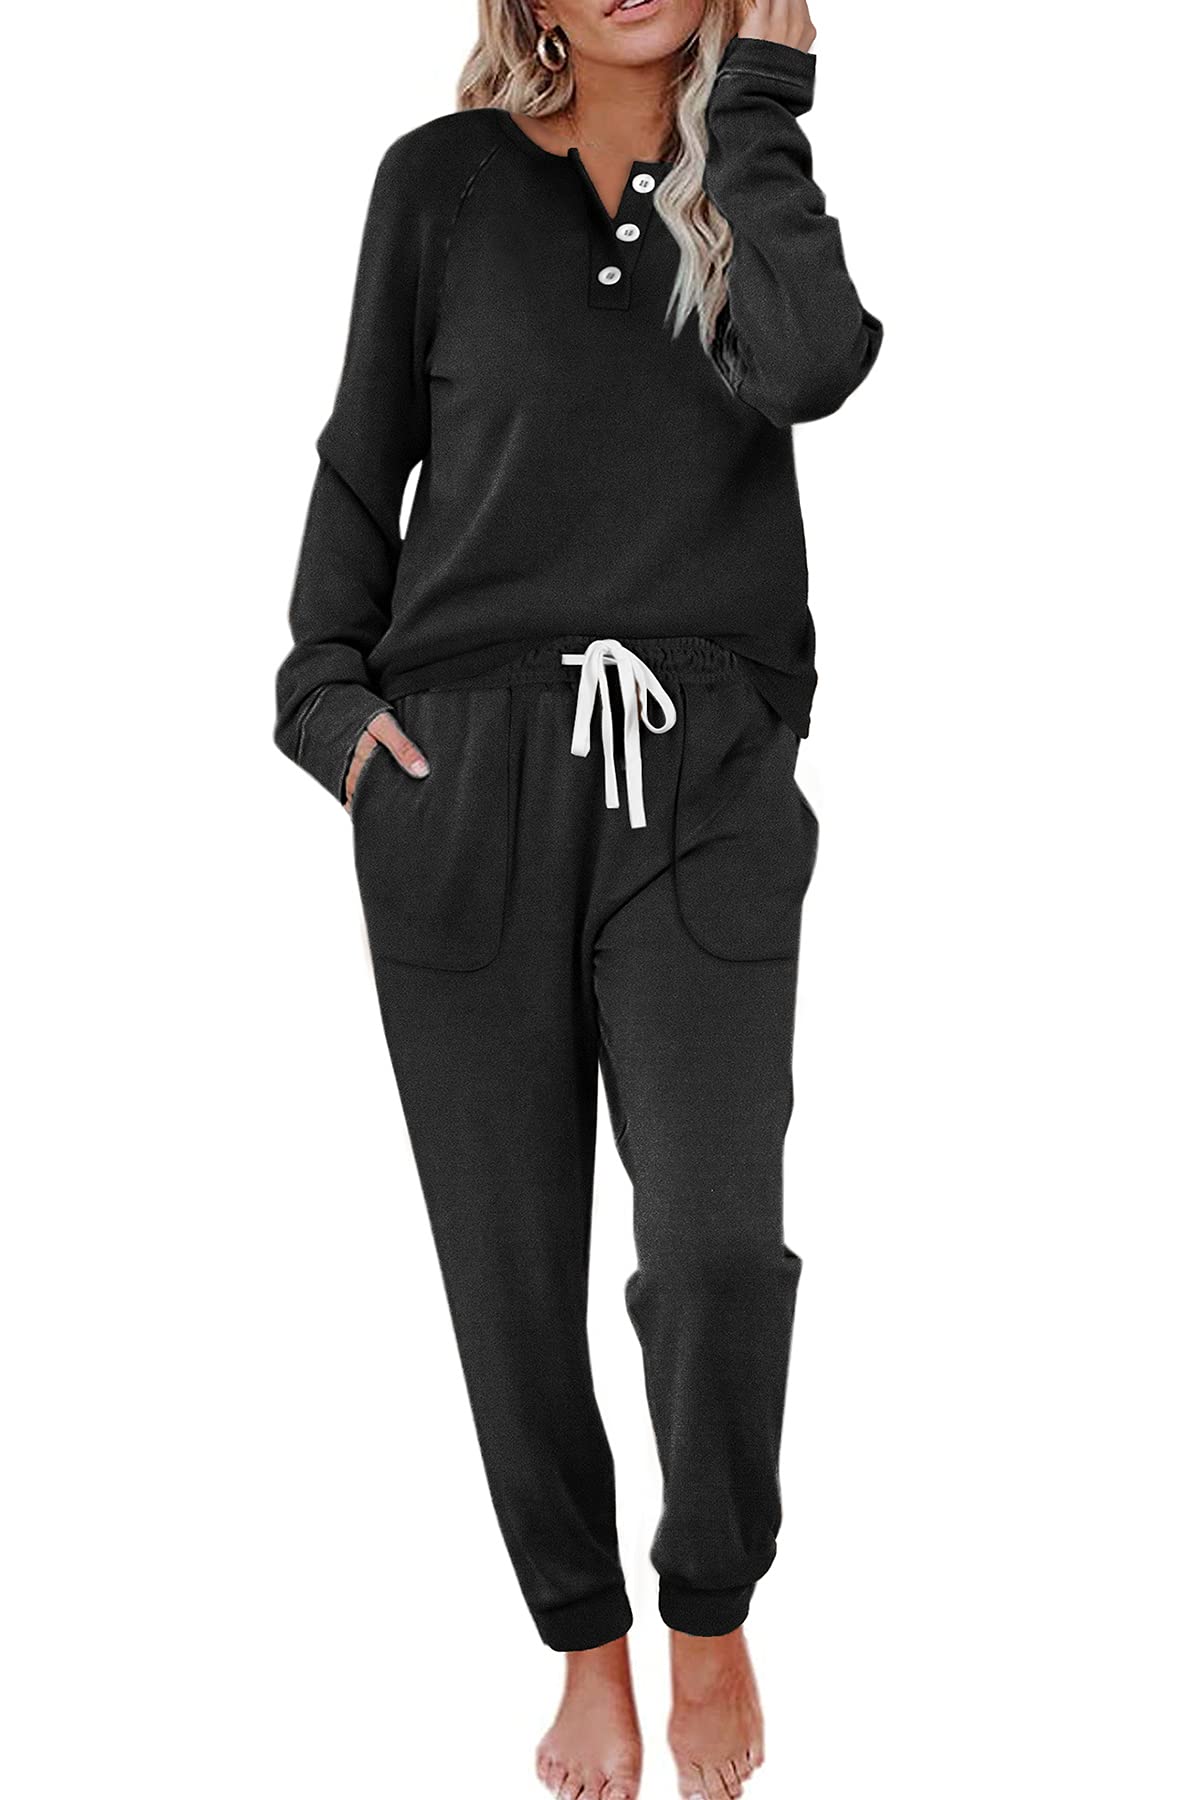 Women's Sweatsuit Set in Black